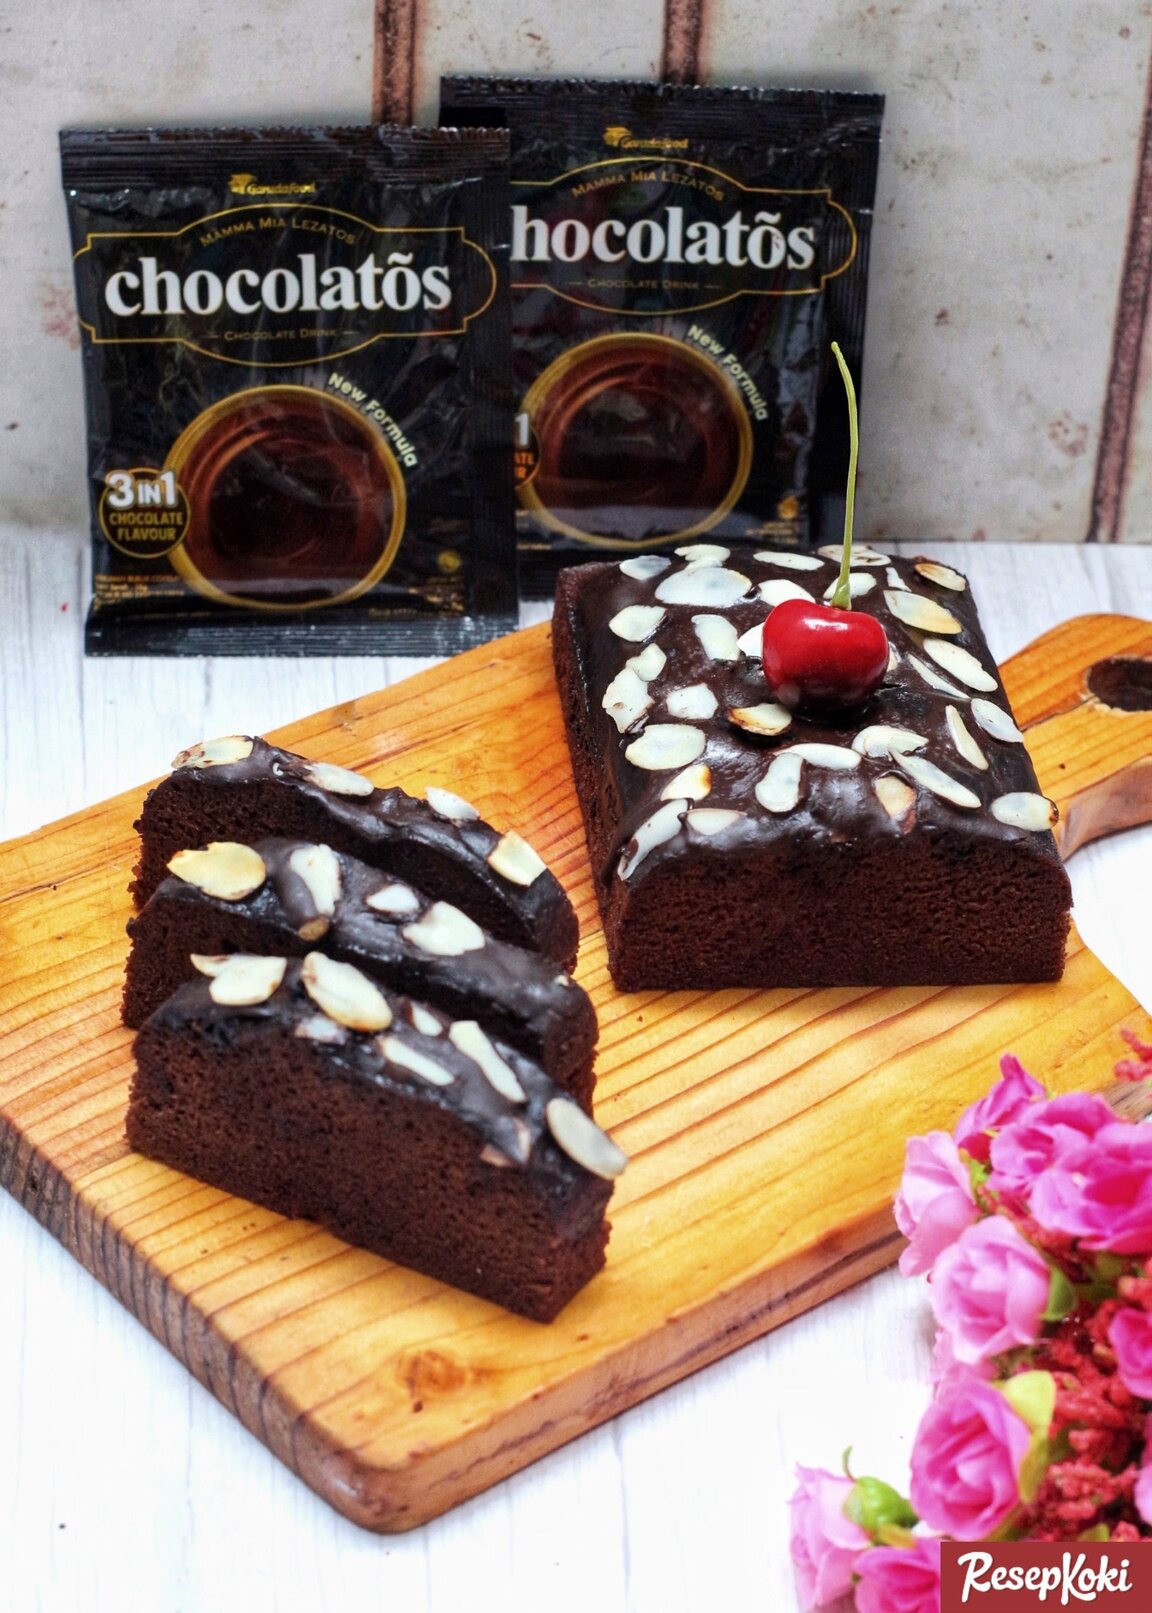 Gambar Hasil Membuat Resep Brownies Chocolatos